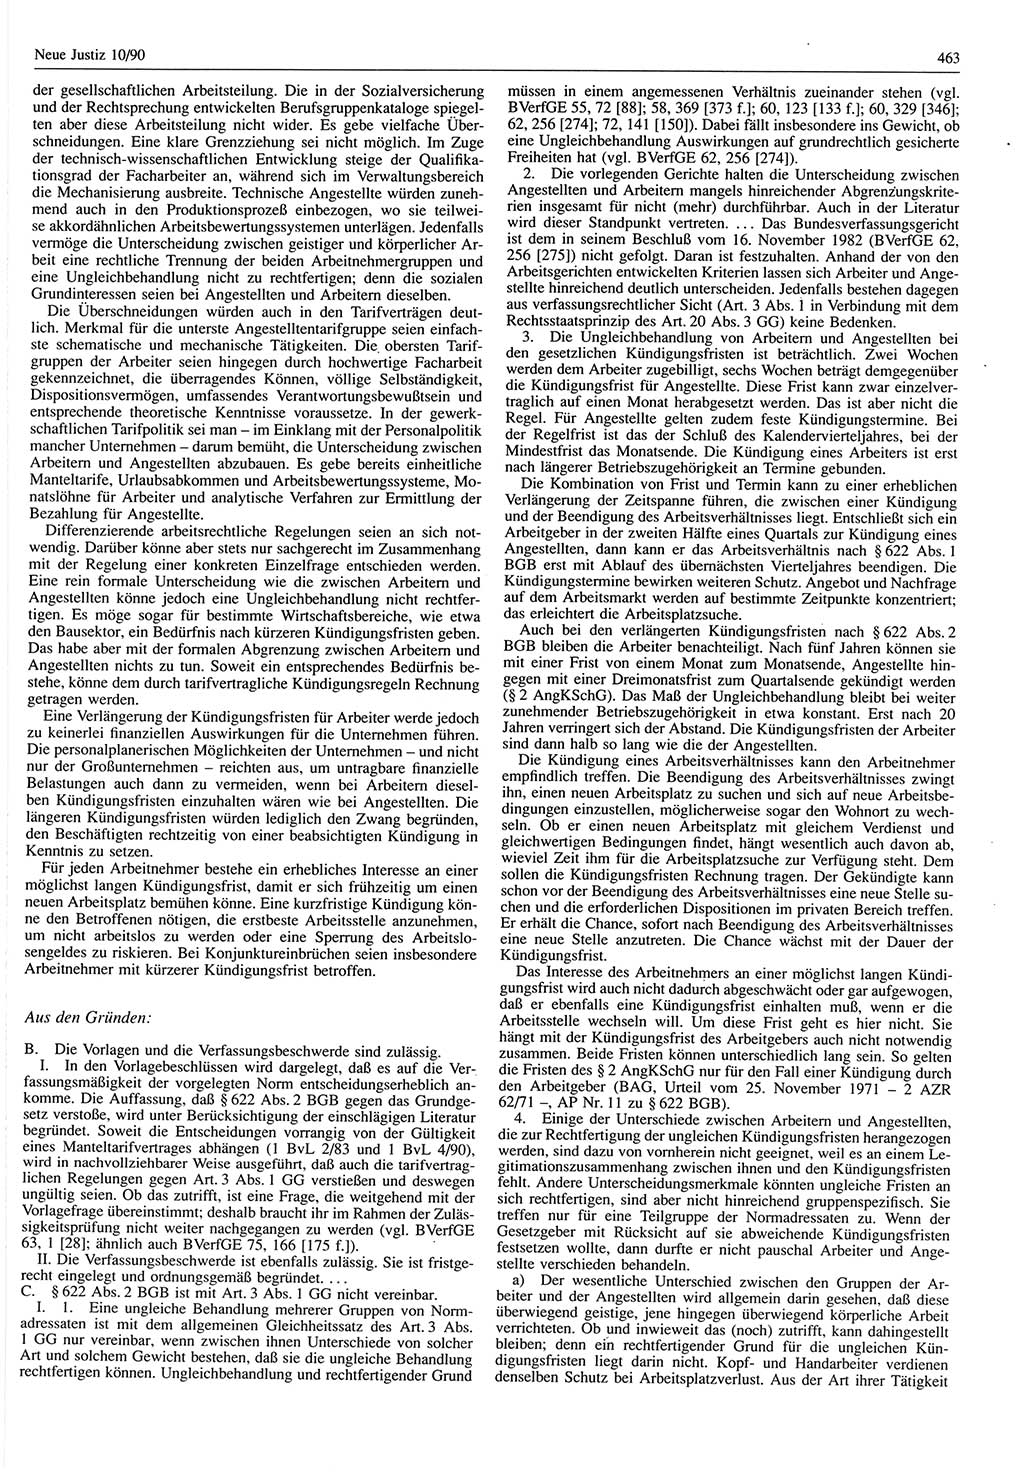 Neue Justiz (NJ), Zeitschrift für Rechtsetzung und Rechtsanwendung [Deutsche Demokratische Republik (DDR)], 44. Jahrgang 1990, Seite 463 (NJ DDR 1990, S. 463)